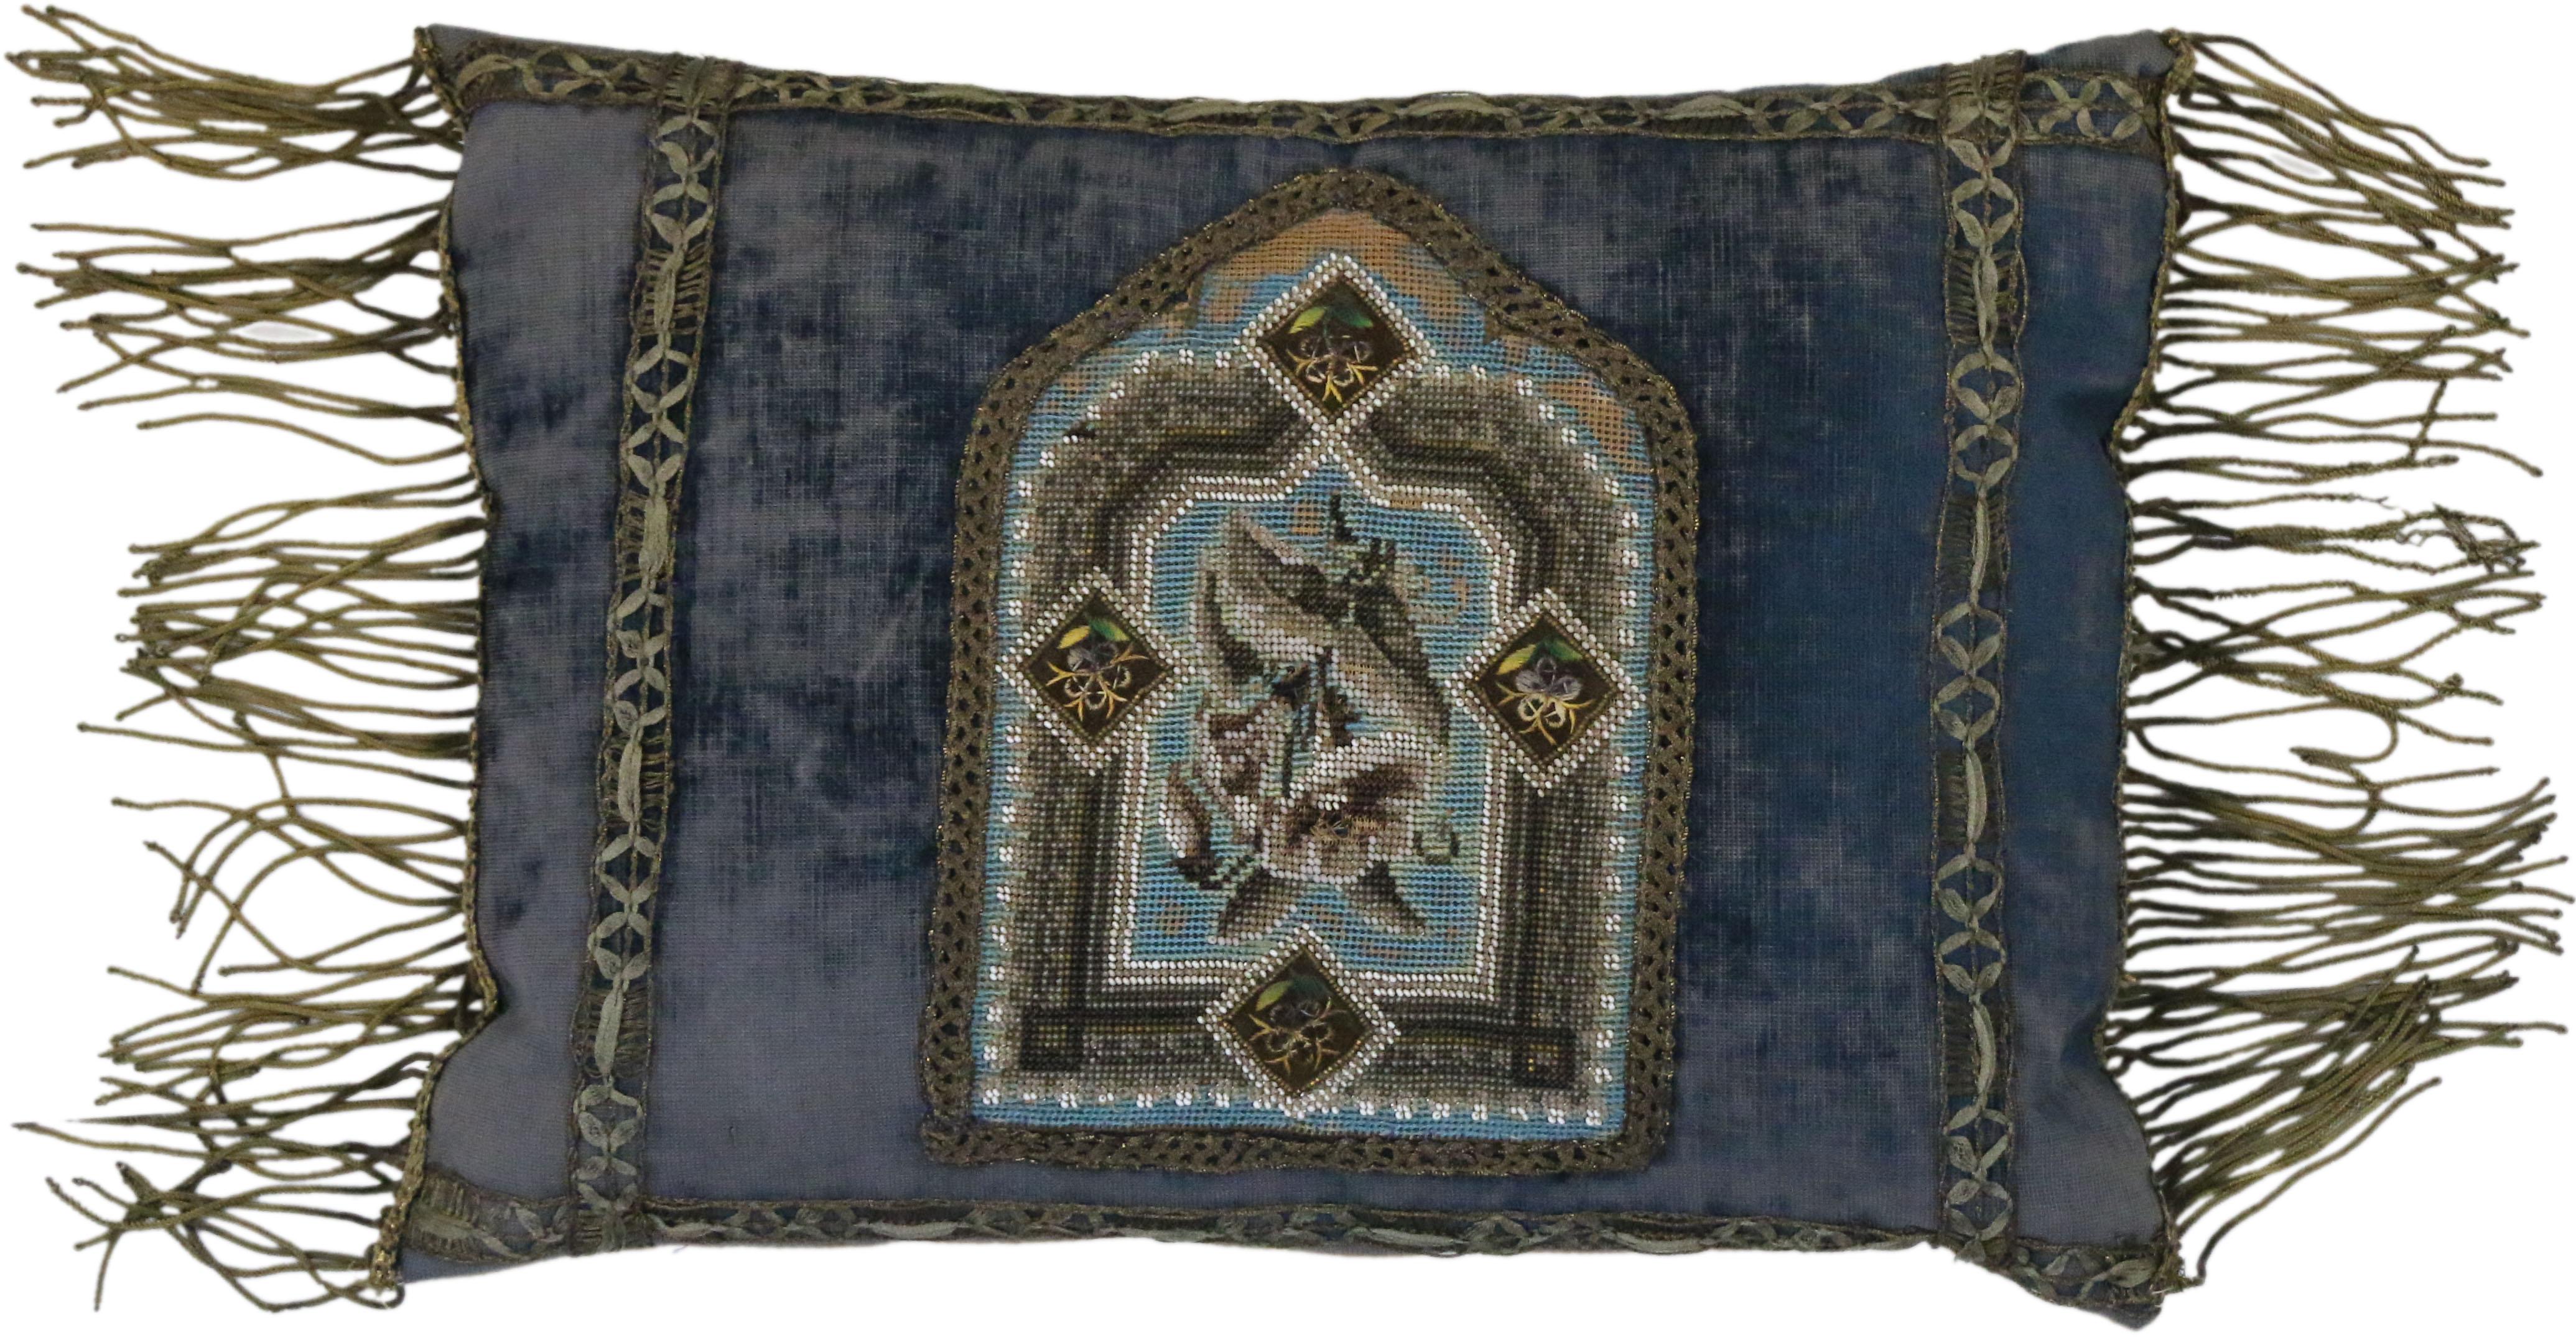 Metallic Thread Mid-19th Century Italian Metallic Embroidered Velvet Pillows Metallic Fringe For Sale